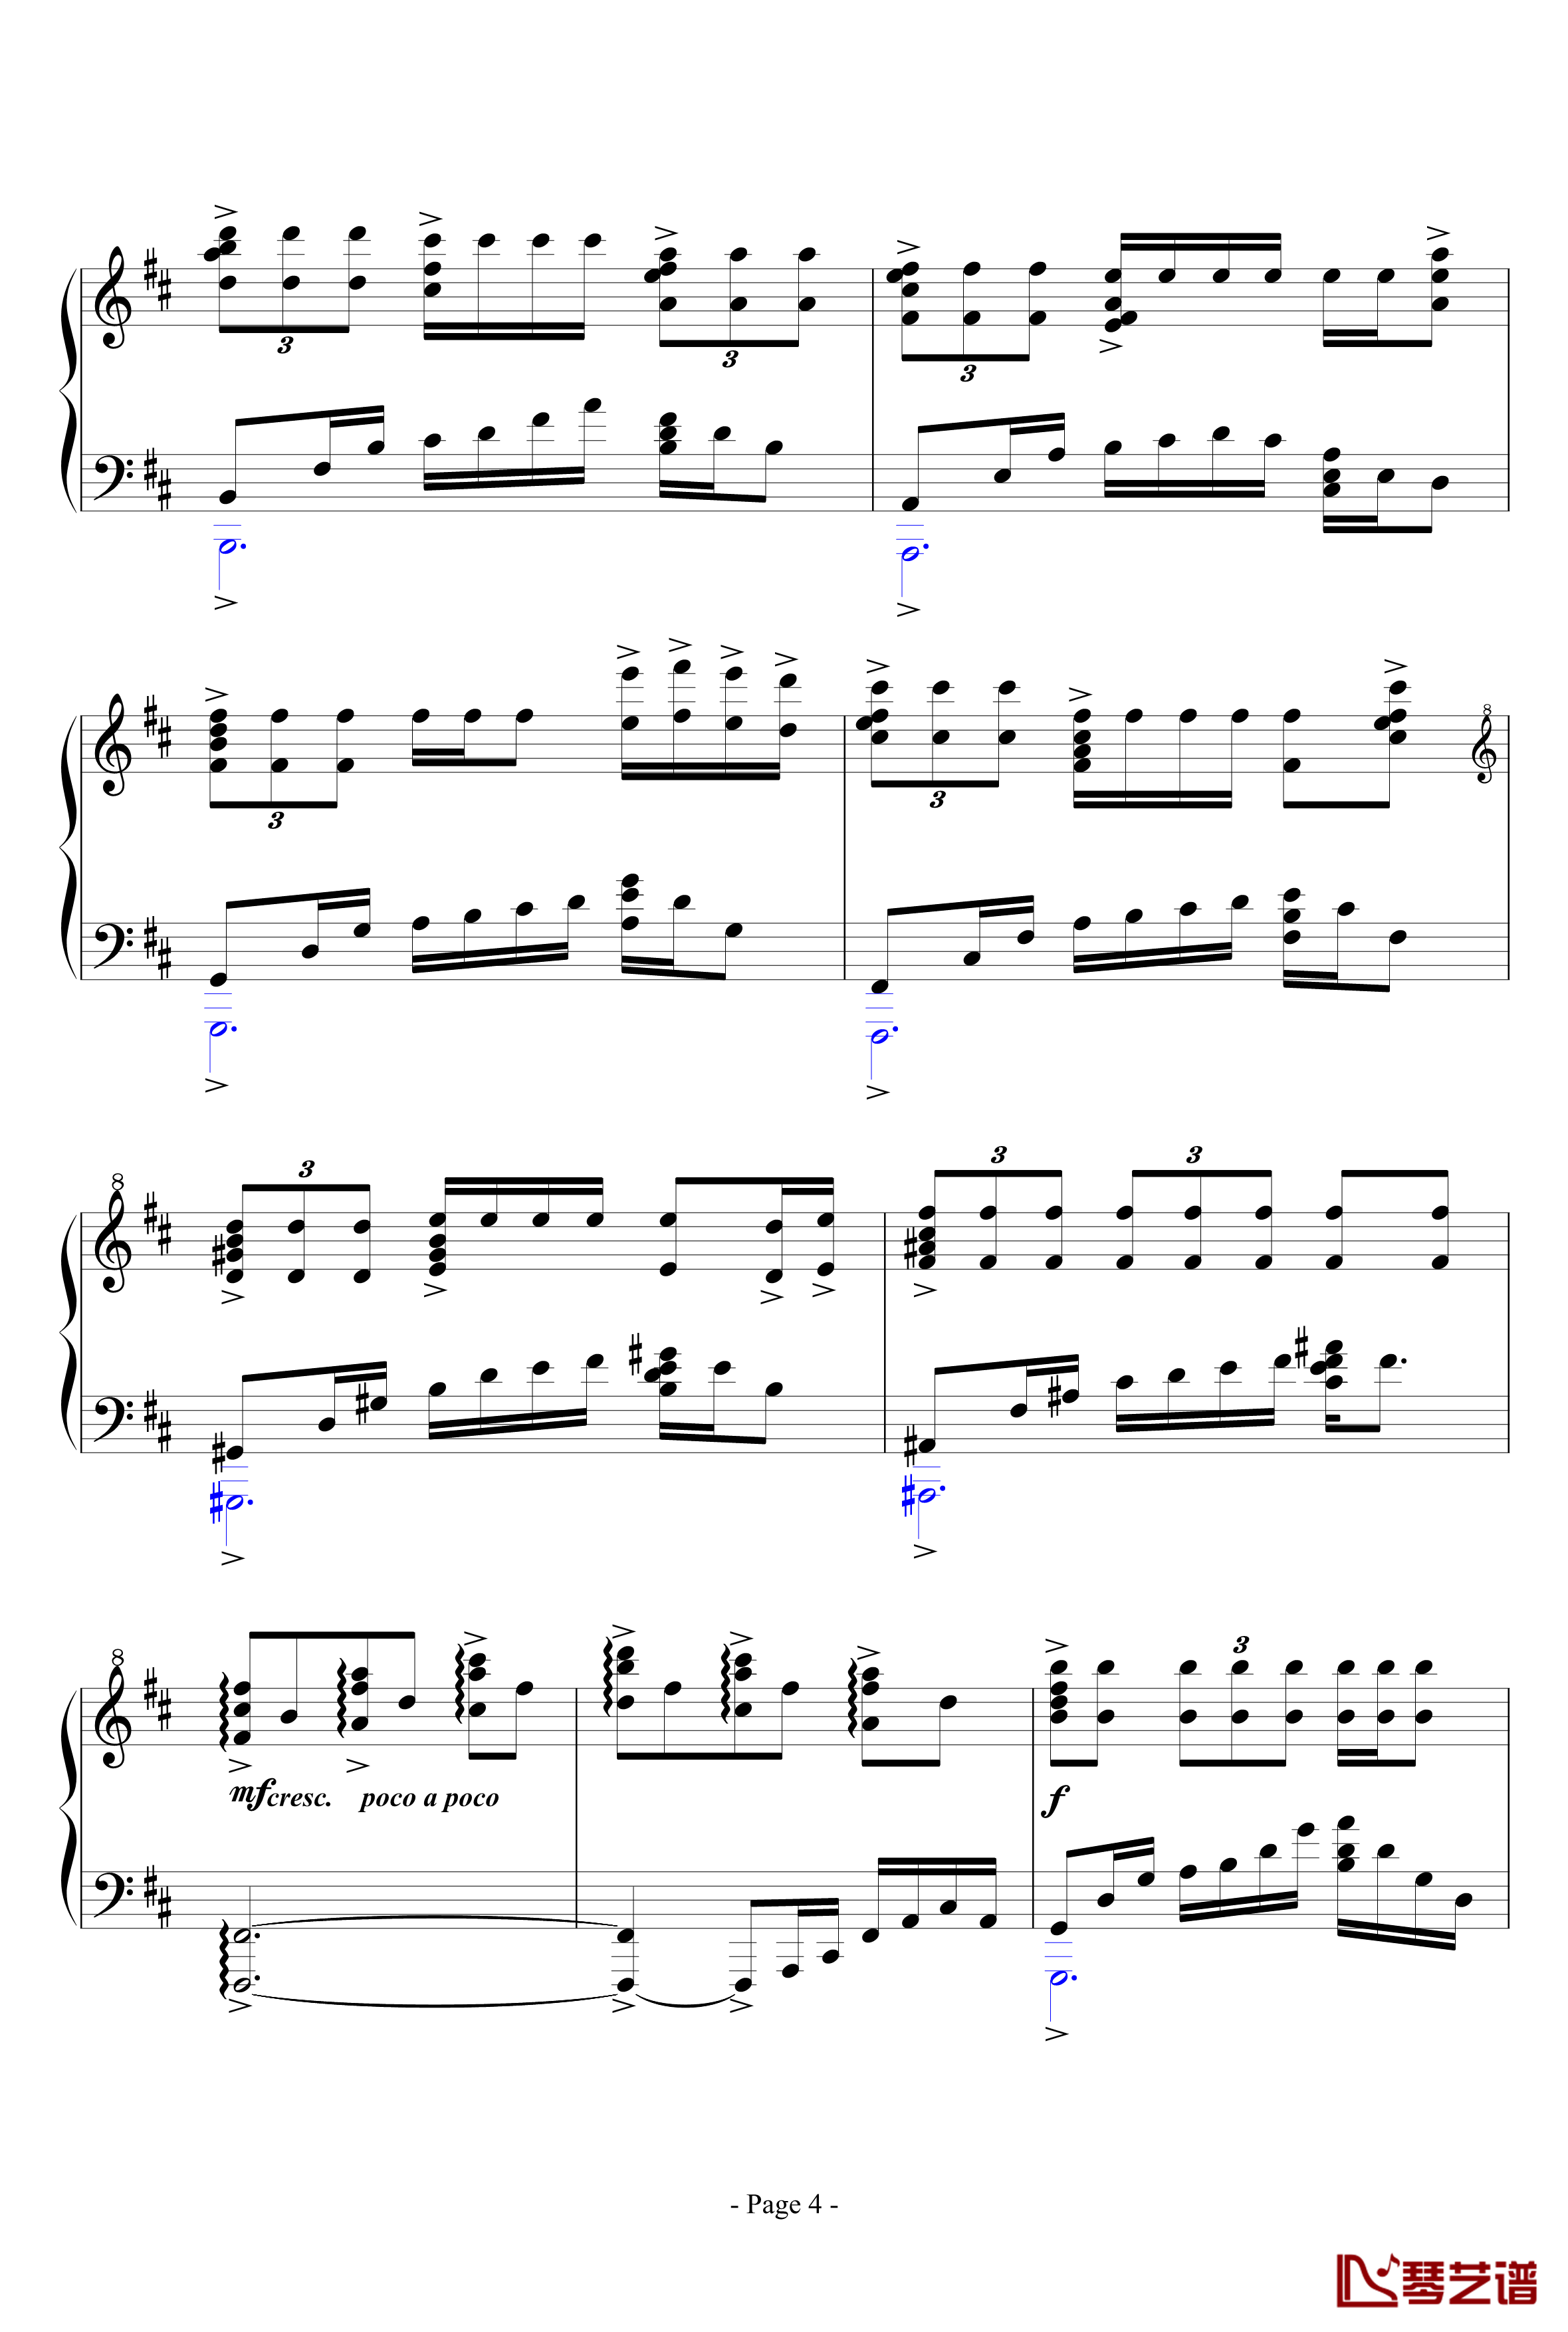 思绪之舞钢琴谱-lujianxiang5554